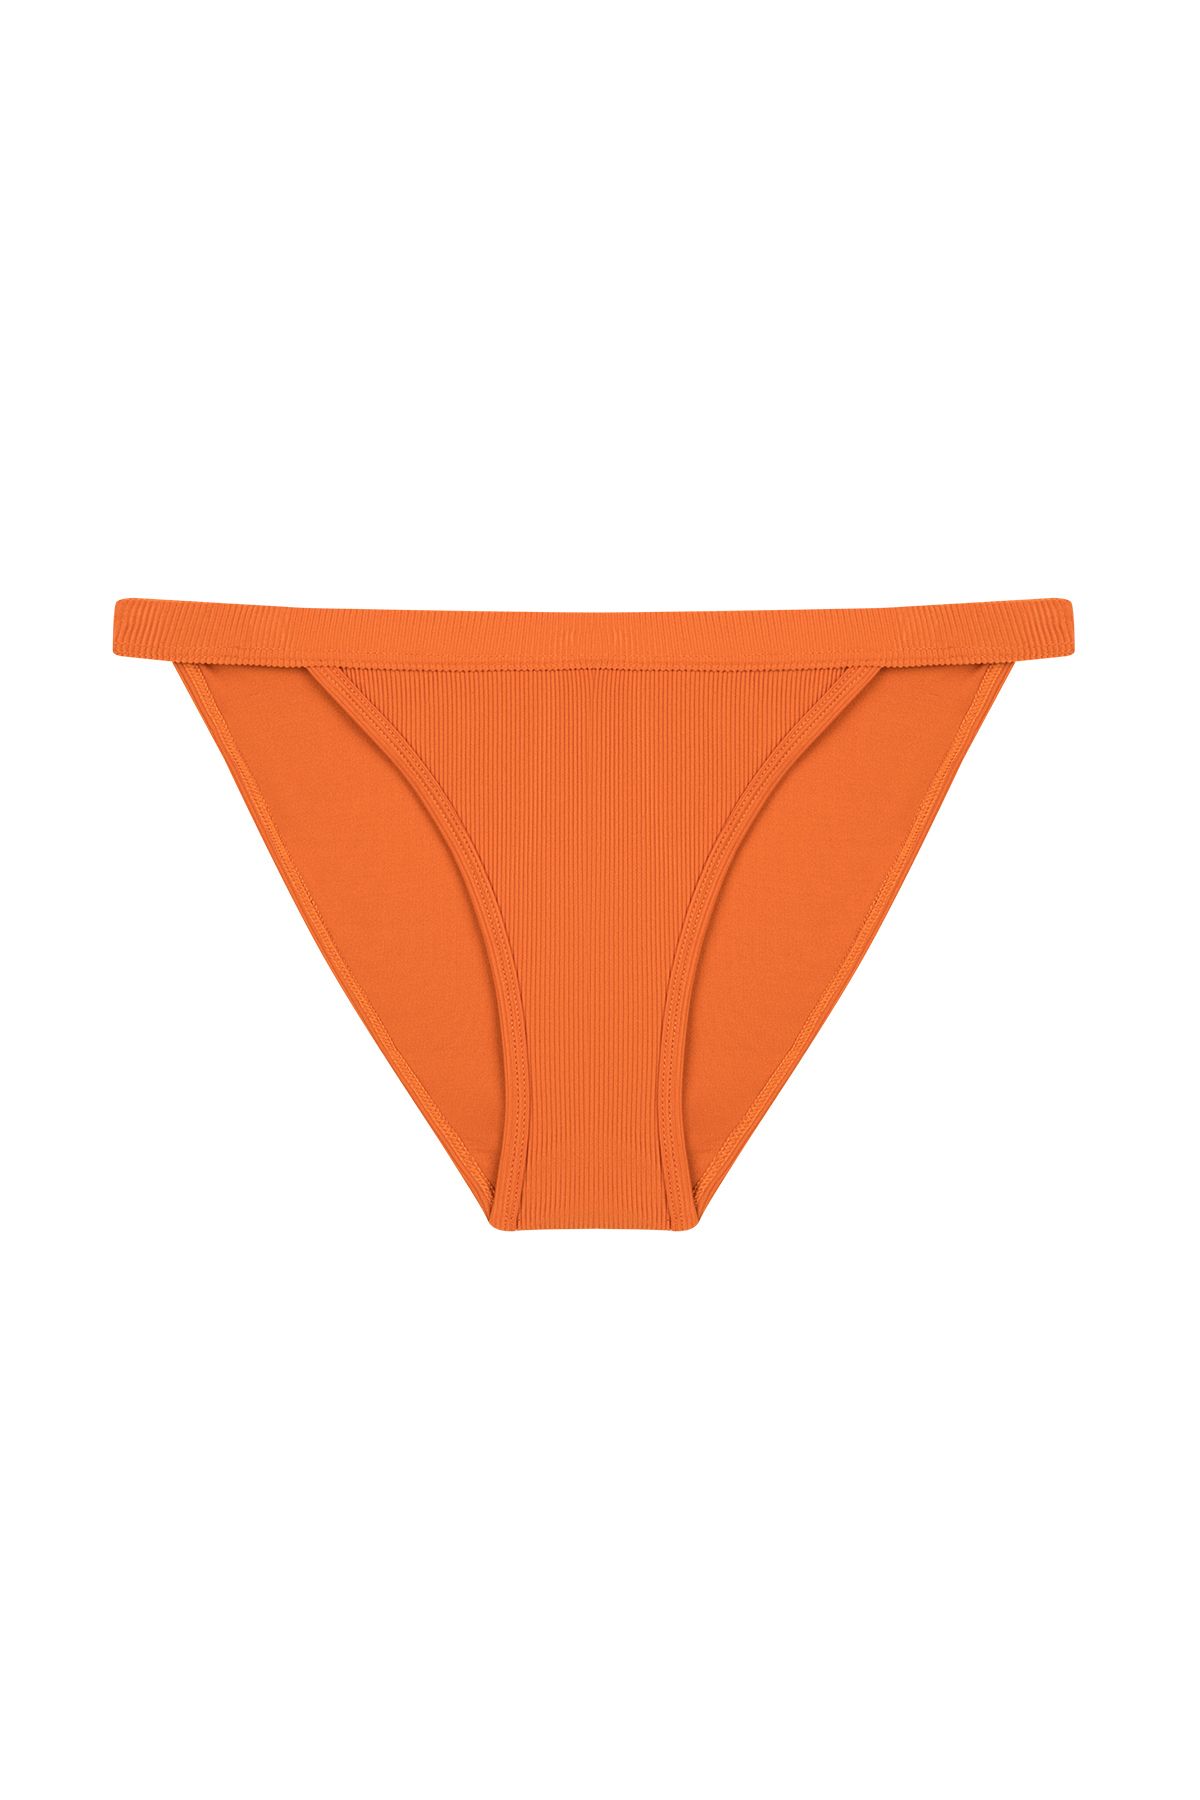 Penti Turuncu Nambia Super Bikini Altı